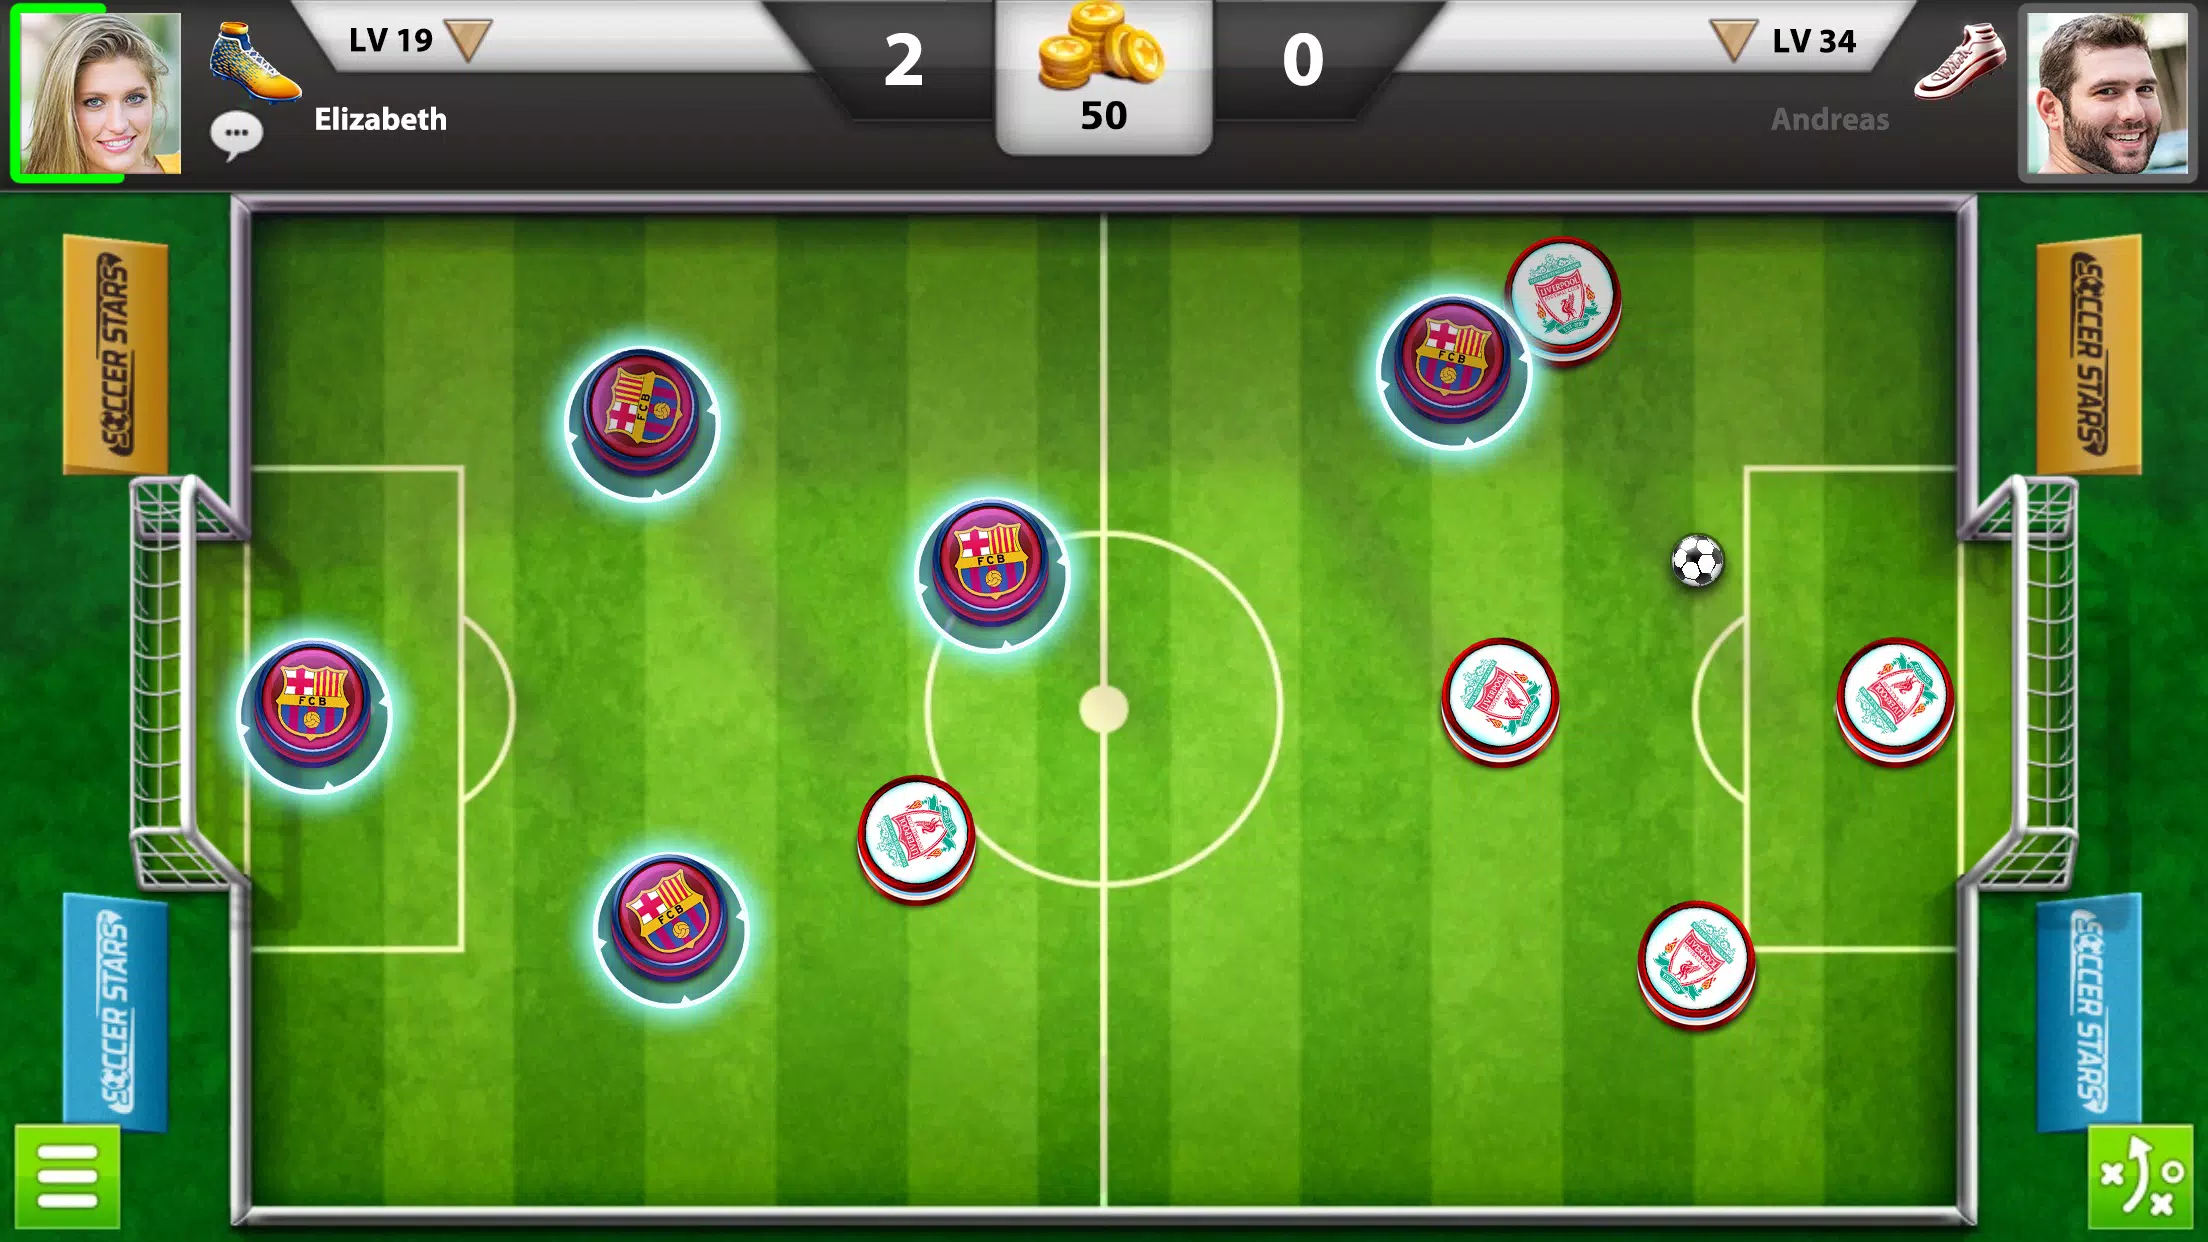 Soccer Stars Full Screen